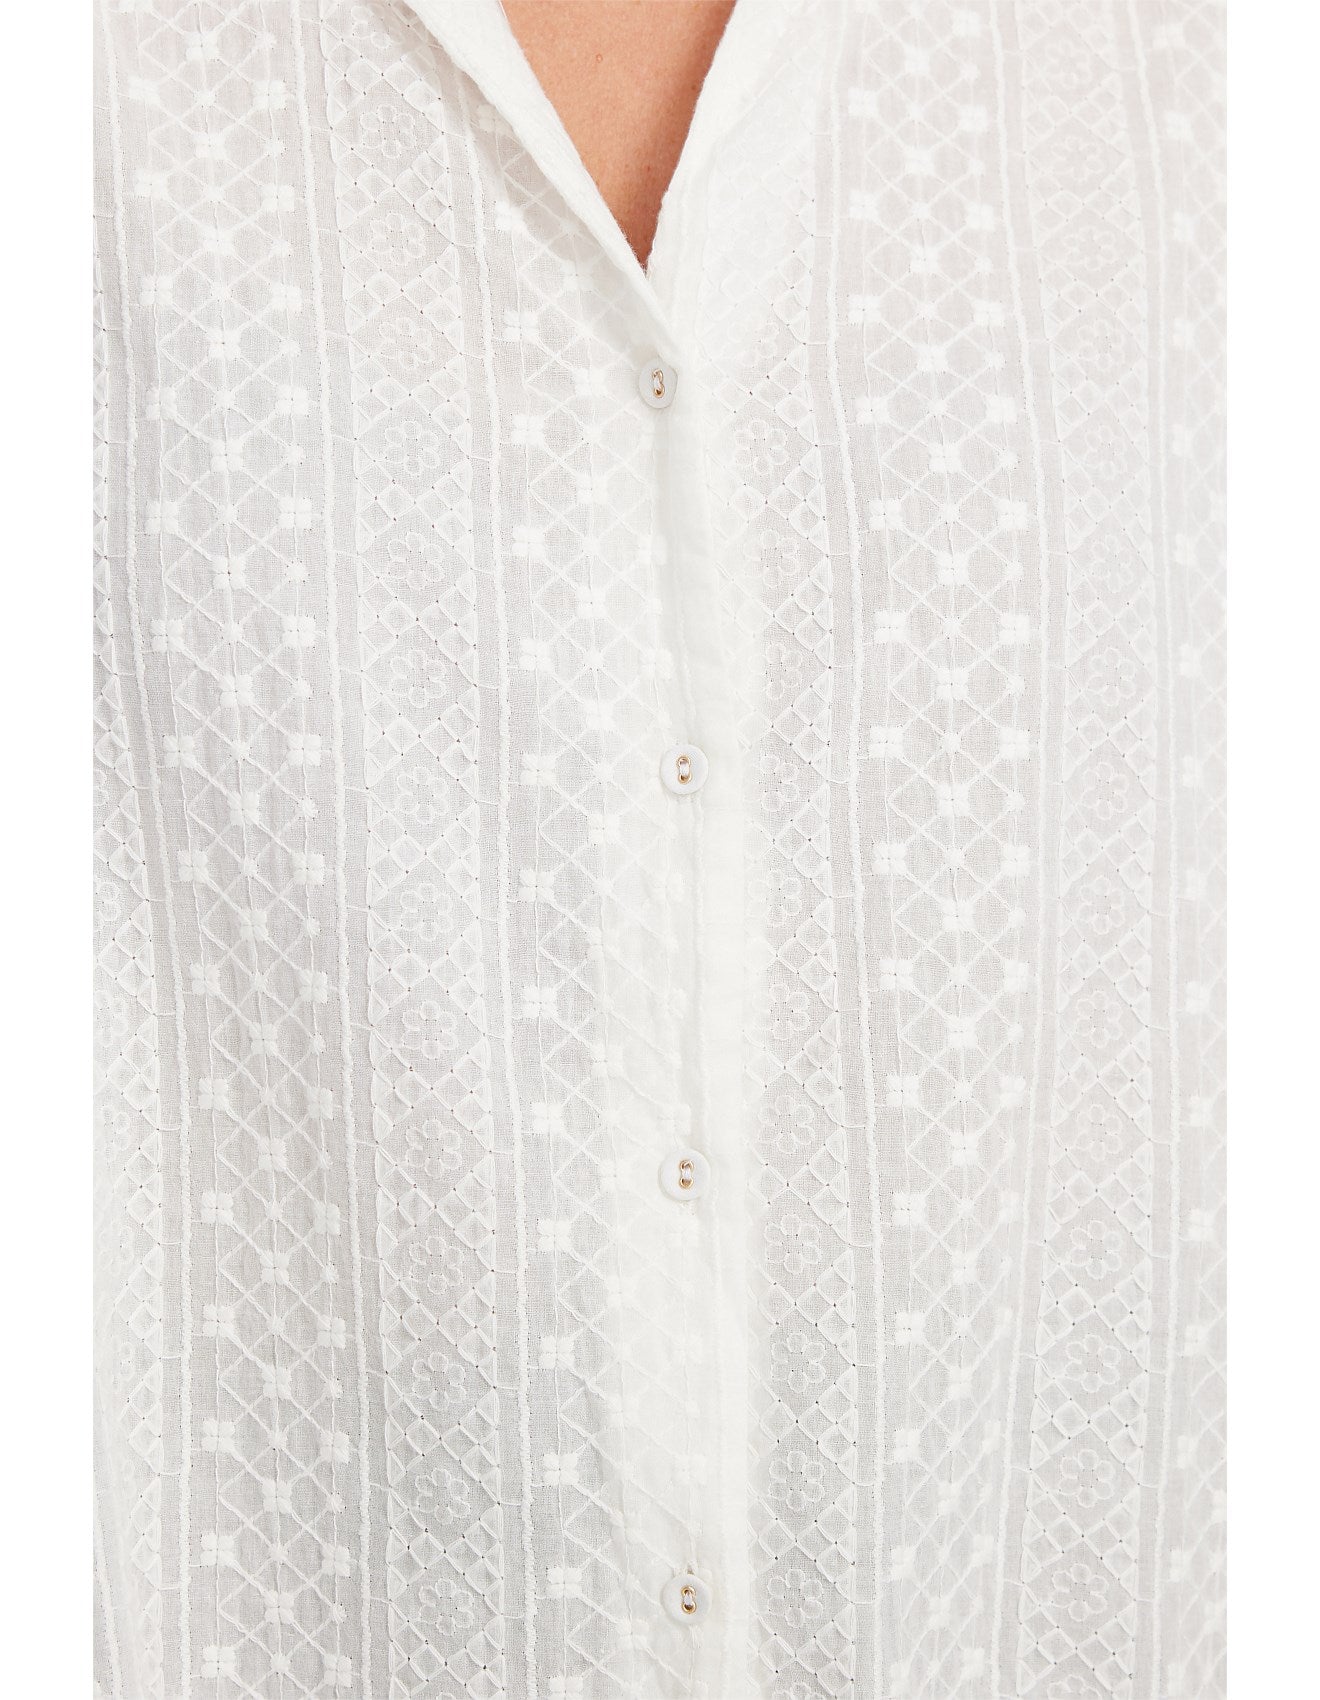 Brave + True White Embroidered Duchess Shirt BT6737-2